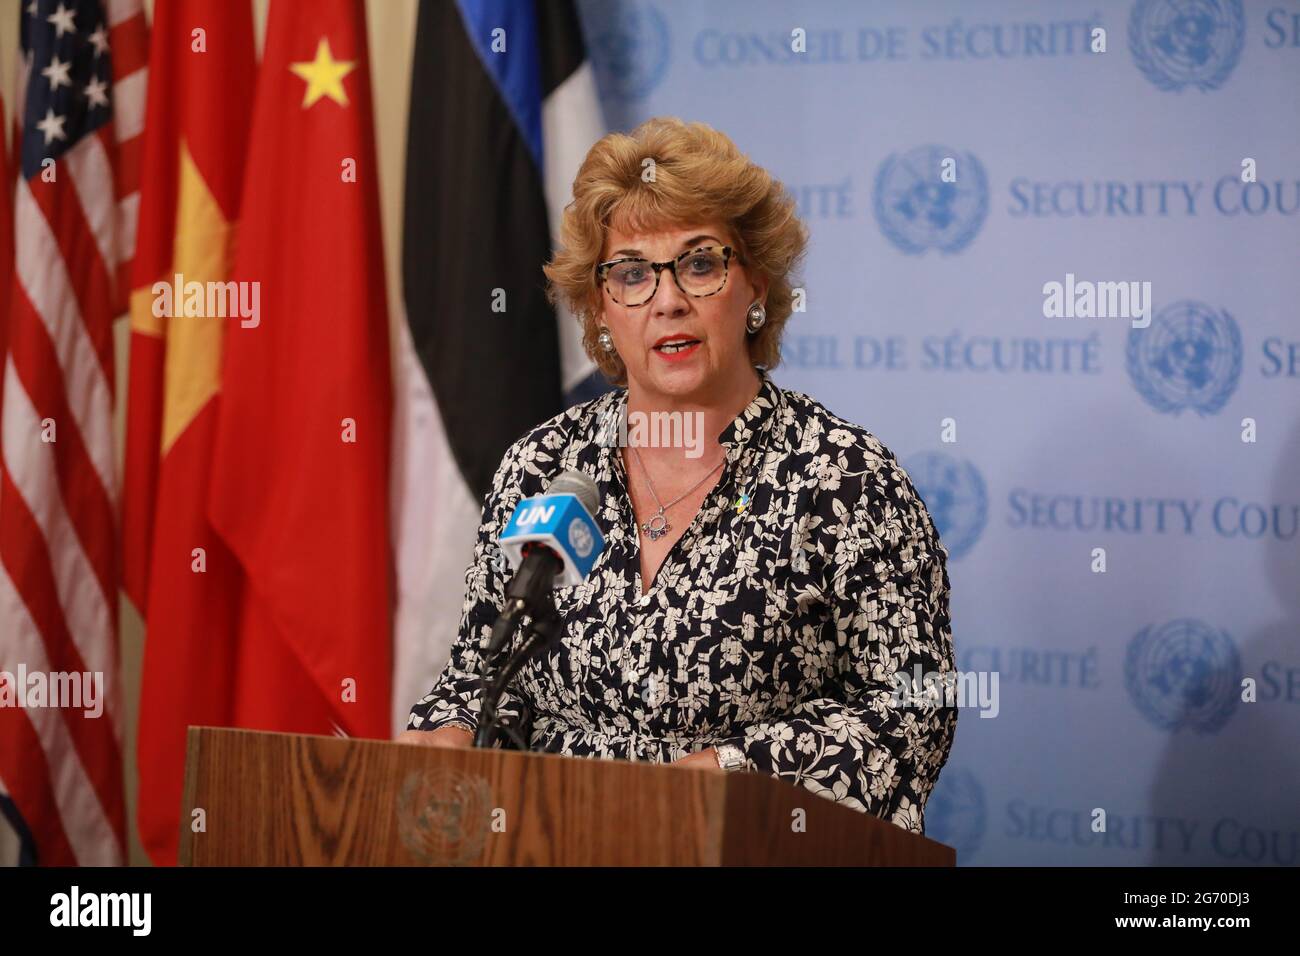 Nations Unies. 09e juillet 2021. (210709) -- NATIONS UNIES, 9 juillet 2021 (Xinhua) -- Geraldine Byrne Nason, ambassadrice irlandaise de l'ONU, a parlé aux journalistes après que le Conseil de sécurité de l'ONU a adopté une résolution visant à proroger de 12 mois l'autorisation du mécanisme d'aide transfrontalière pour les Syriens, au siège de l'ONU à New York, le 9 juillet 2021. La résolution 2585, qui a gagné le soutien unanime du conseil des 15 membres, permettra à l'aide transfrontalière en Syrie de la Turquie de se présenter pendant 12 mois supplémentaires. L'autorisation actuelle de 12 mois d'aide par le poste frontalier de Bab al-Hawa expire samedi. Banque D'Images